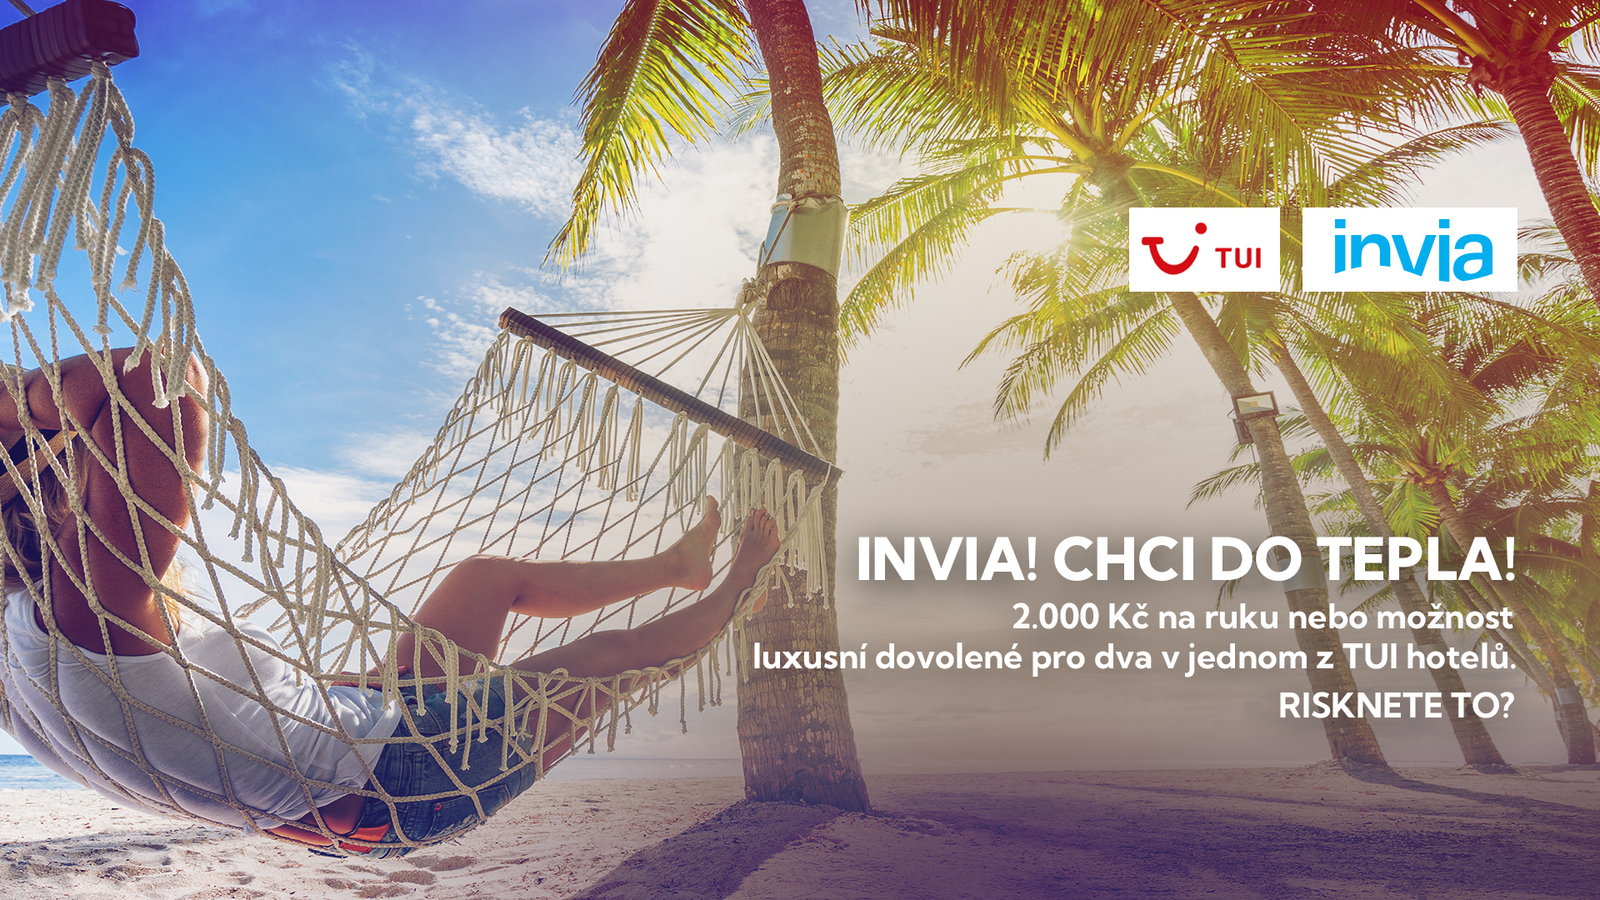 INVIA! CHCI DO TEPLA! - vyhrajte dovolenou v jednom z exkluzivních hotelů TUI ve Španělsku, Řecku nebo Turecku!